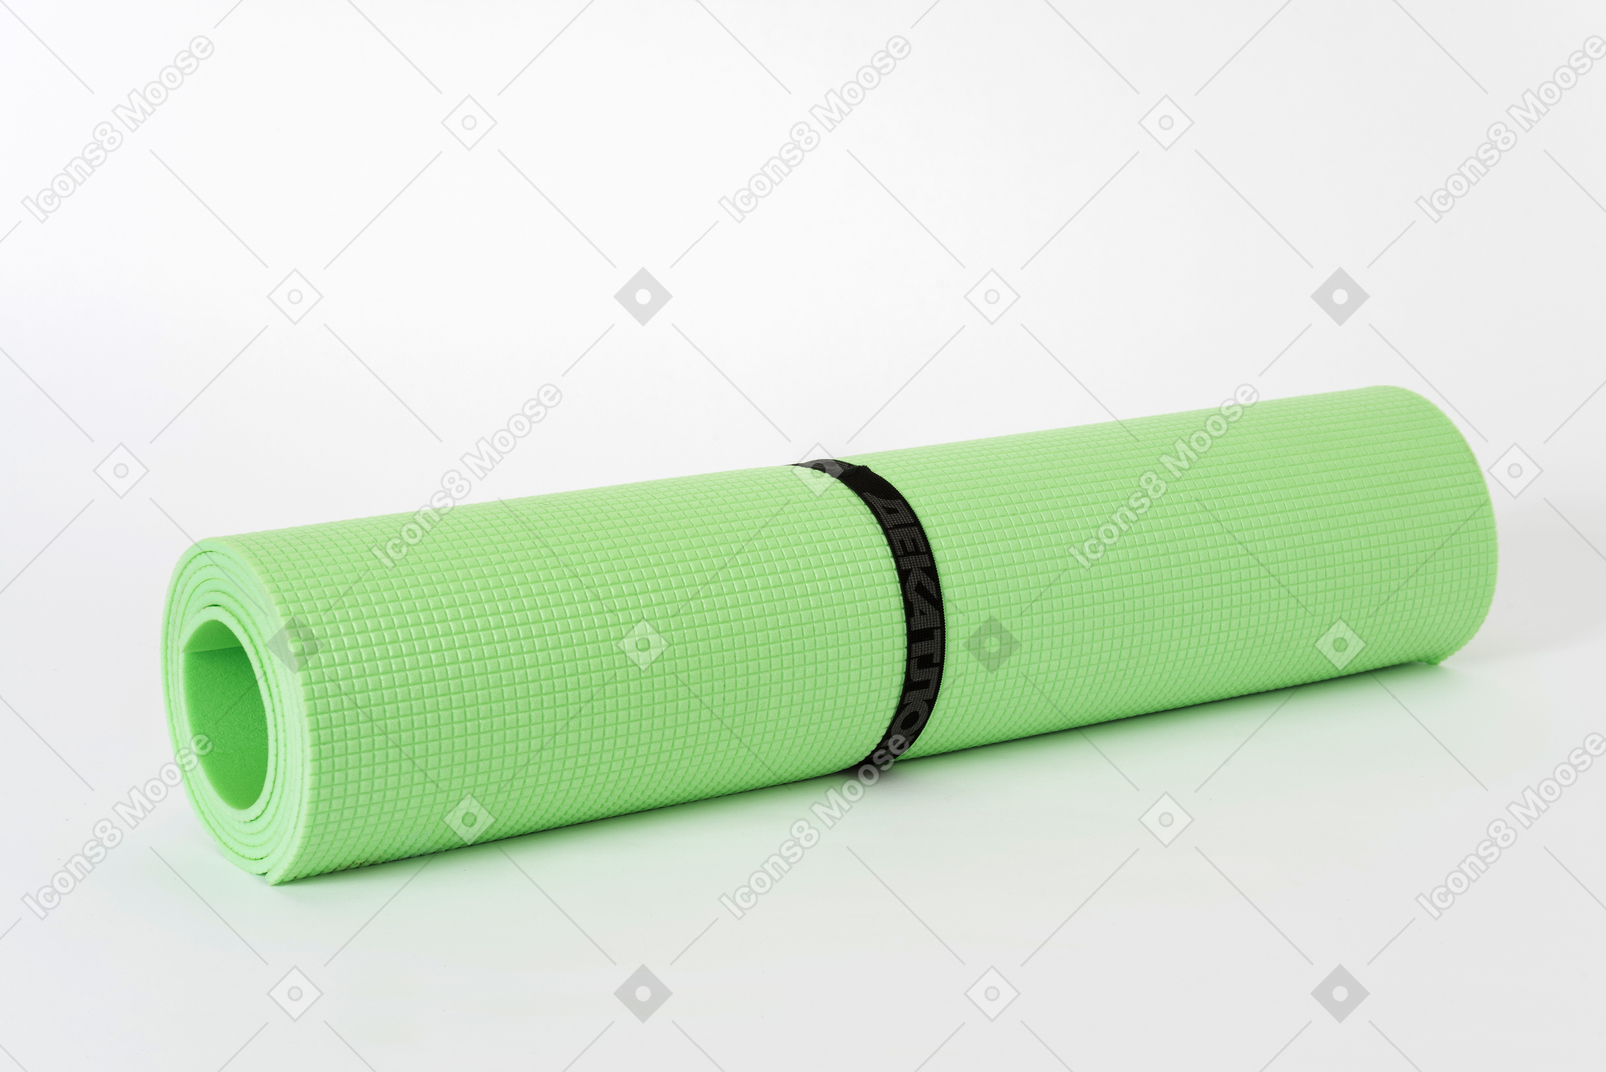 Tapete de yoga verde sobre um fundo branco